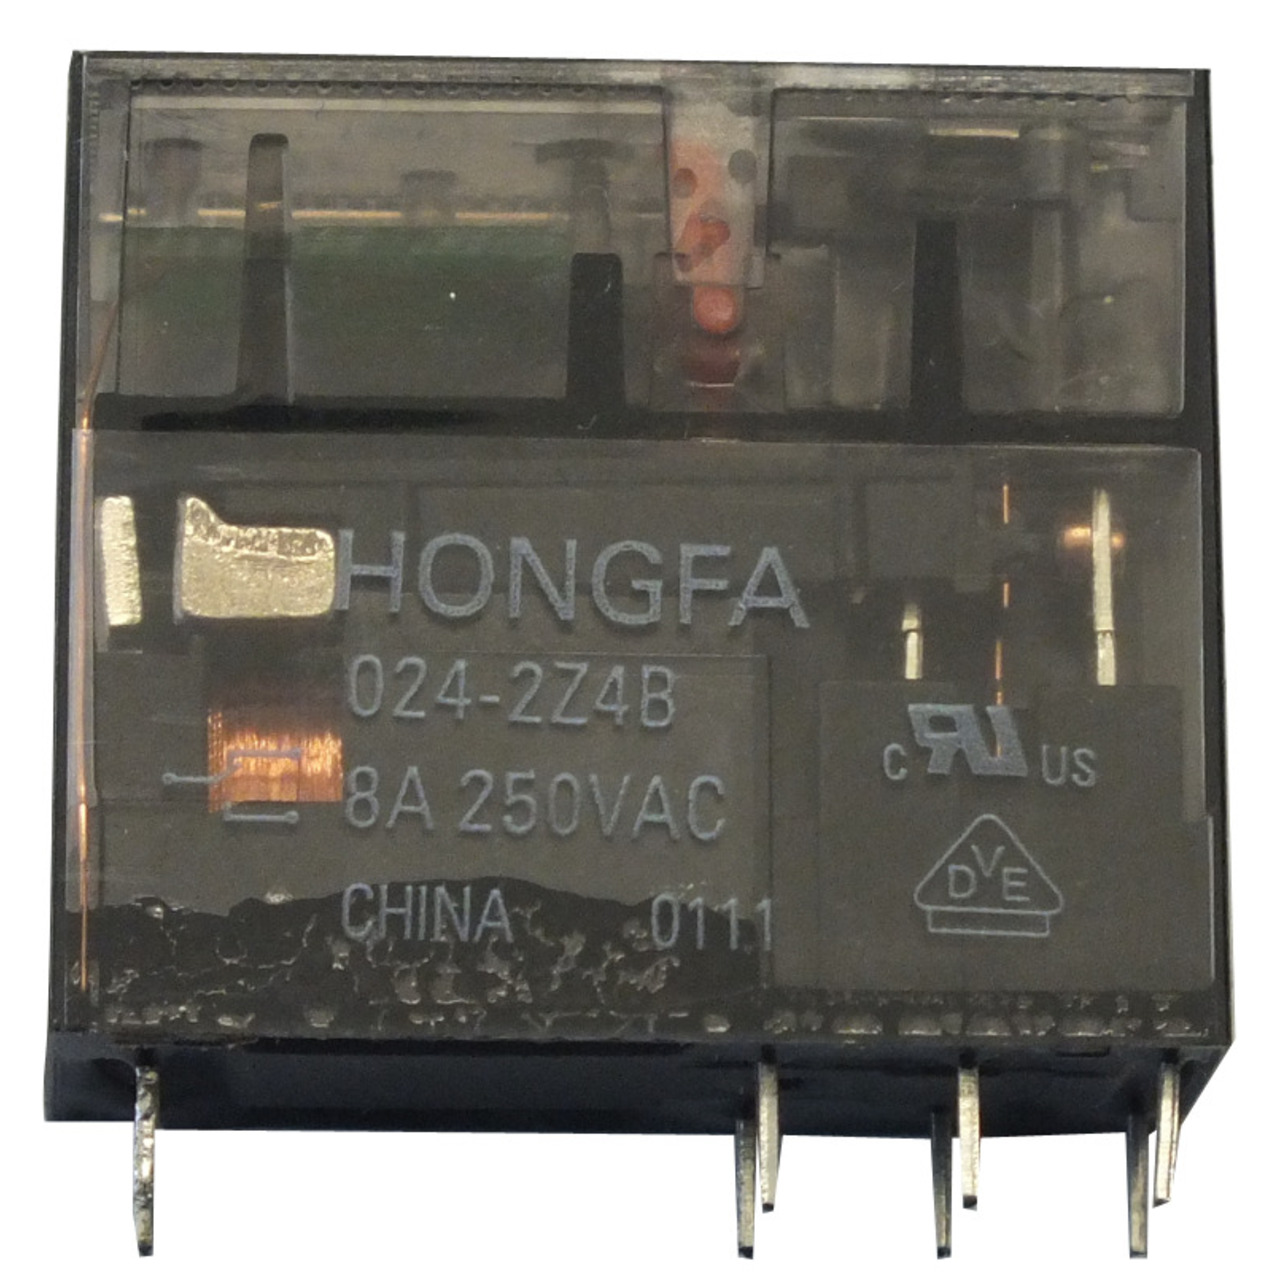 HONGFA Relais- 24 V- 2 ffner-Schliesser- HF115FP-024-2Z4B unter Komponenten